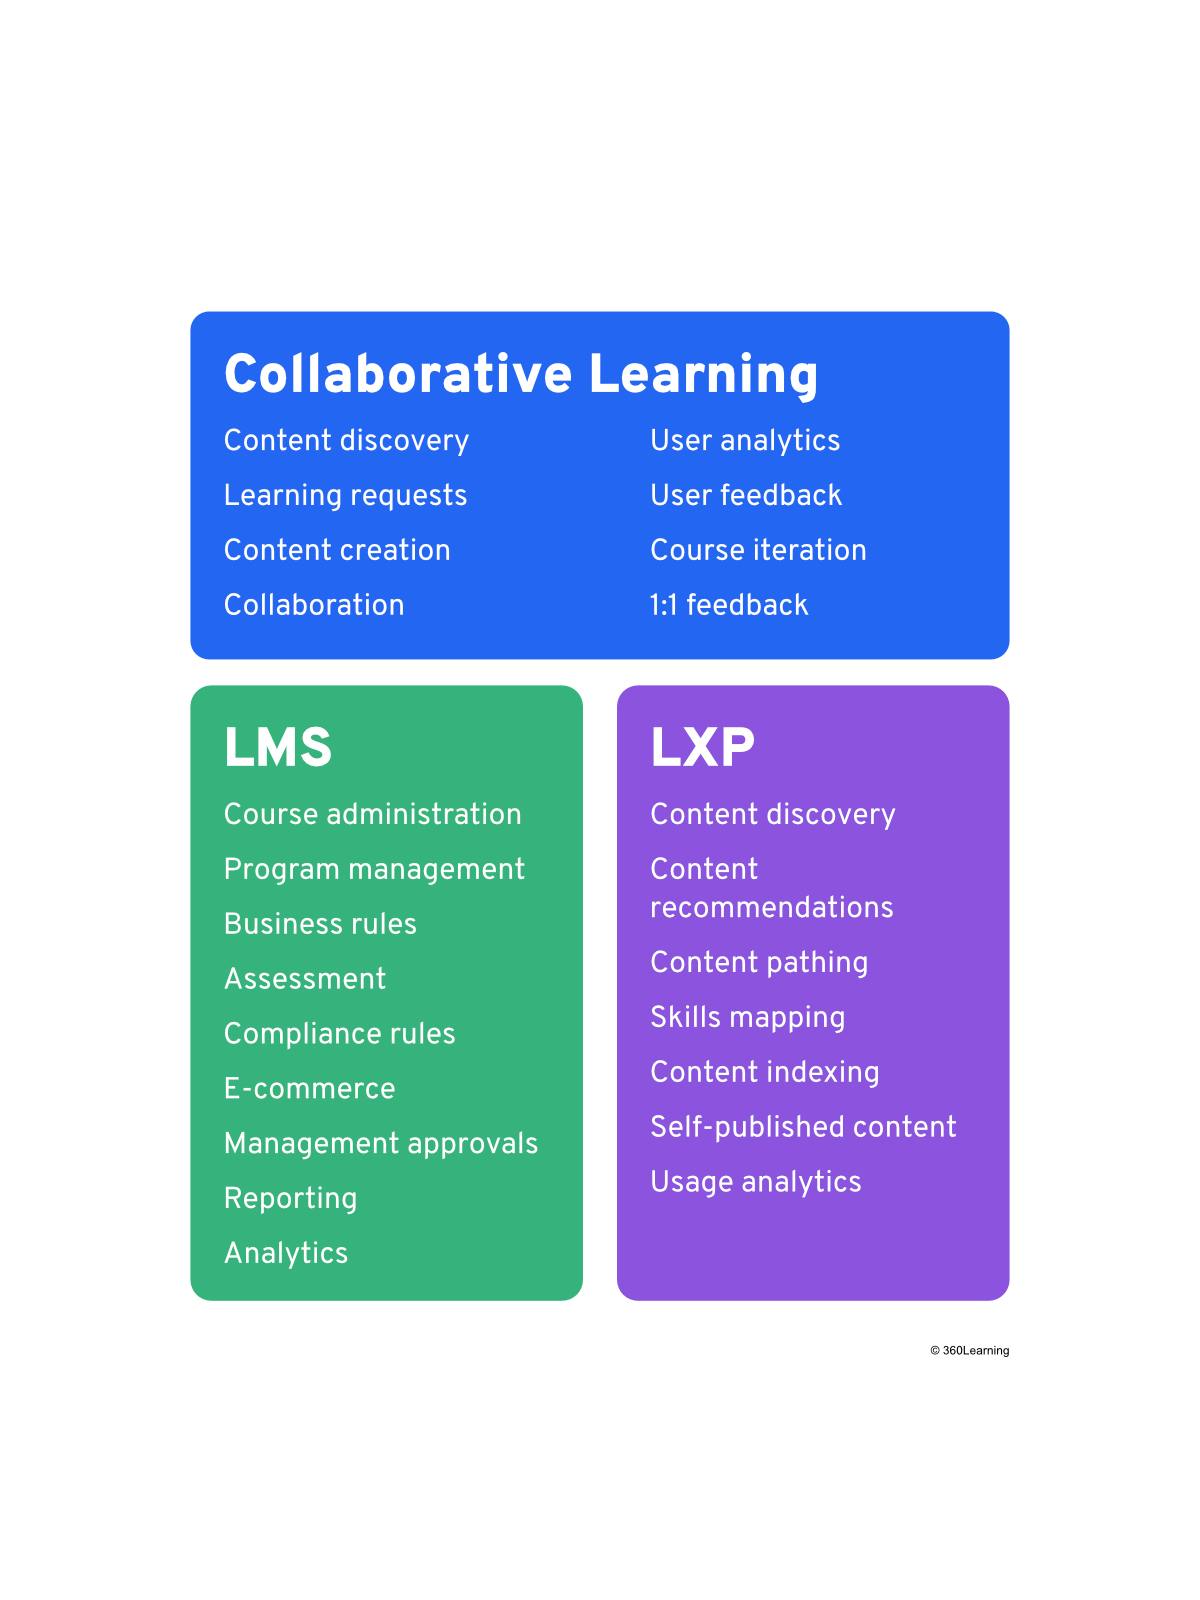 LXP vs. LMS vs. Collaborative Learning